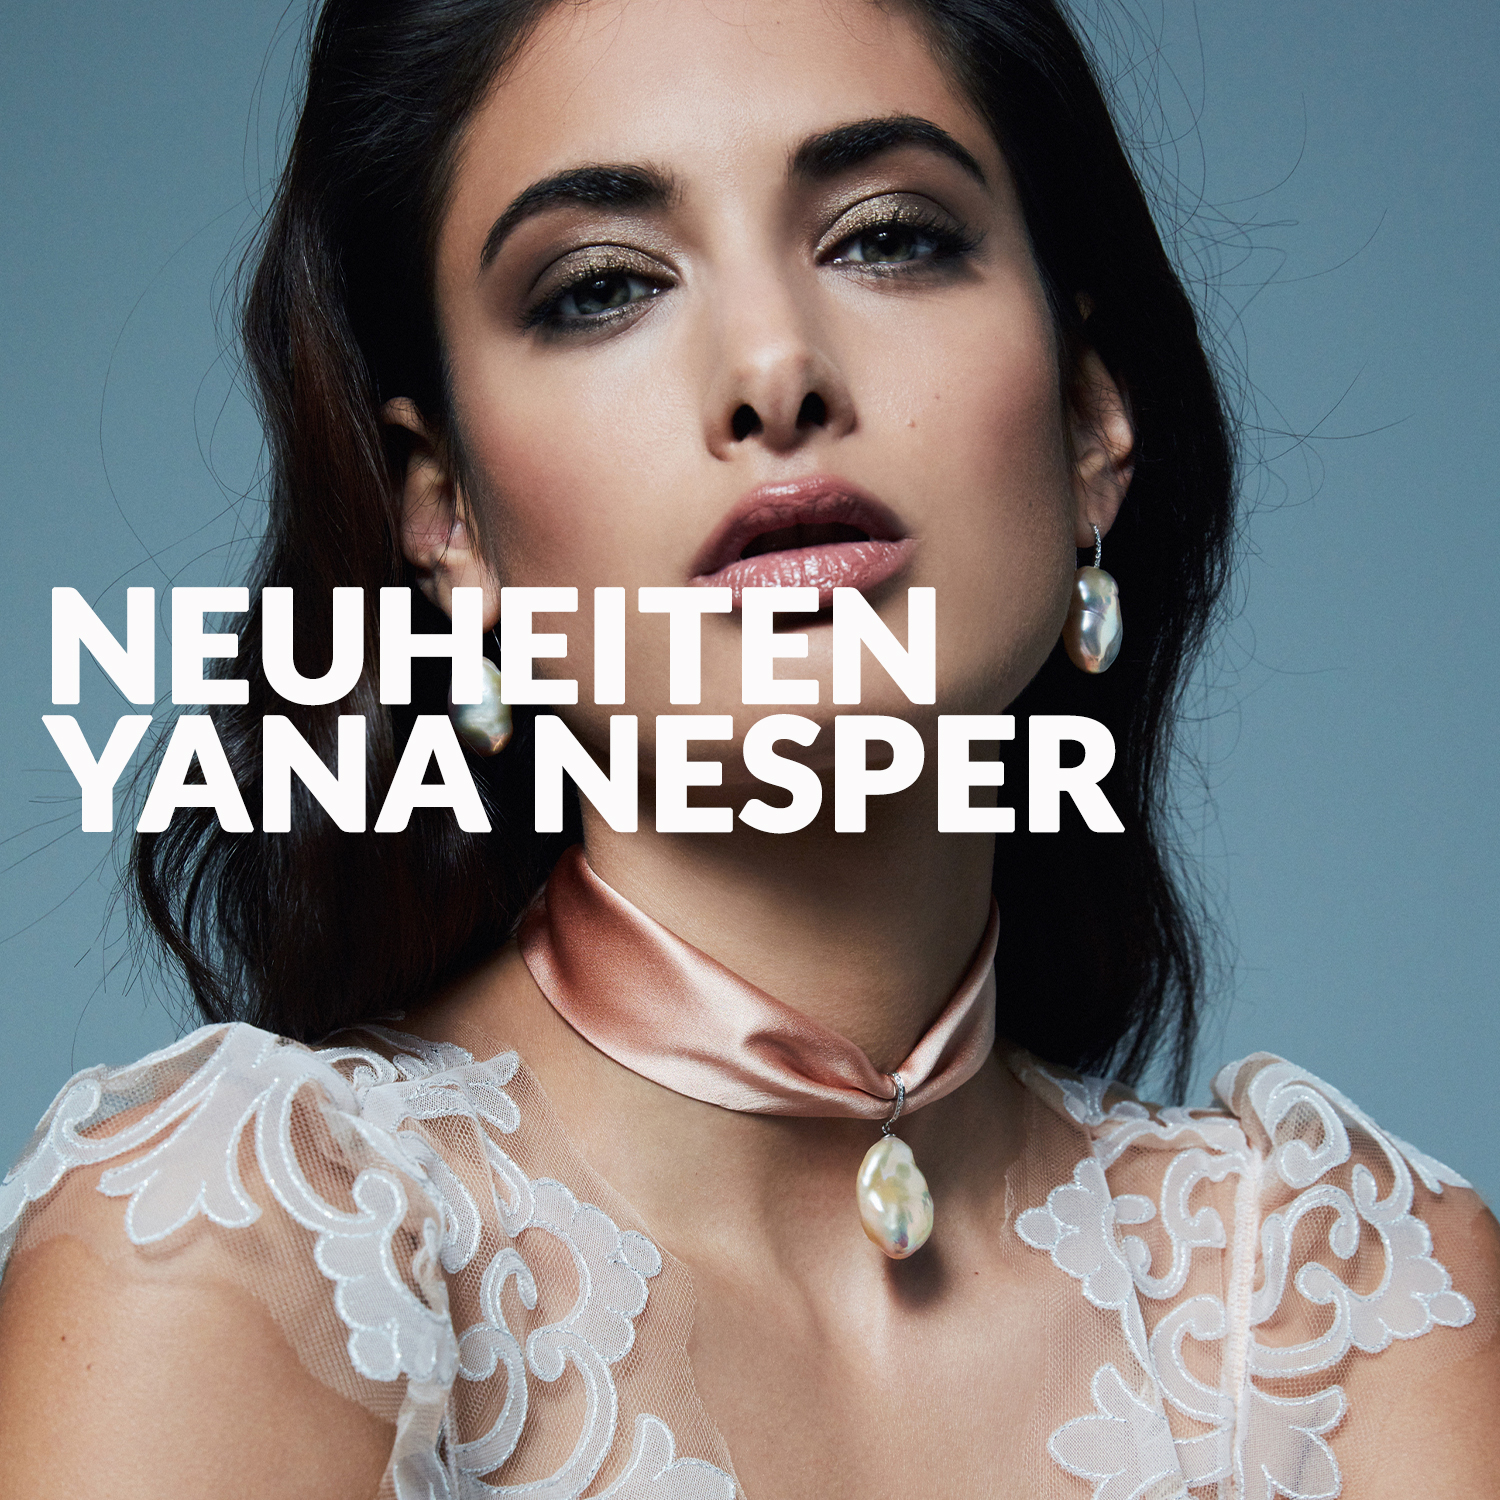 Neuheiten Yana Nesper